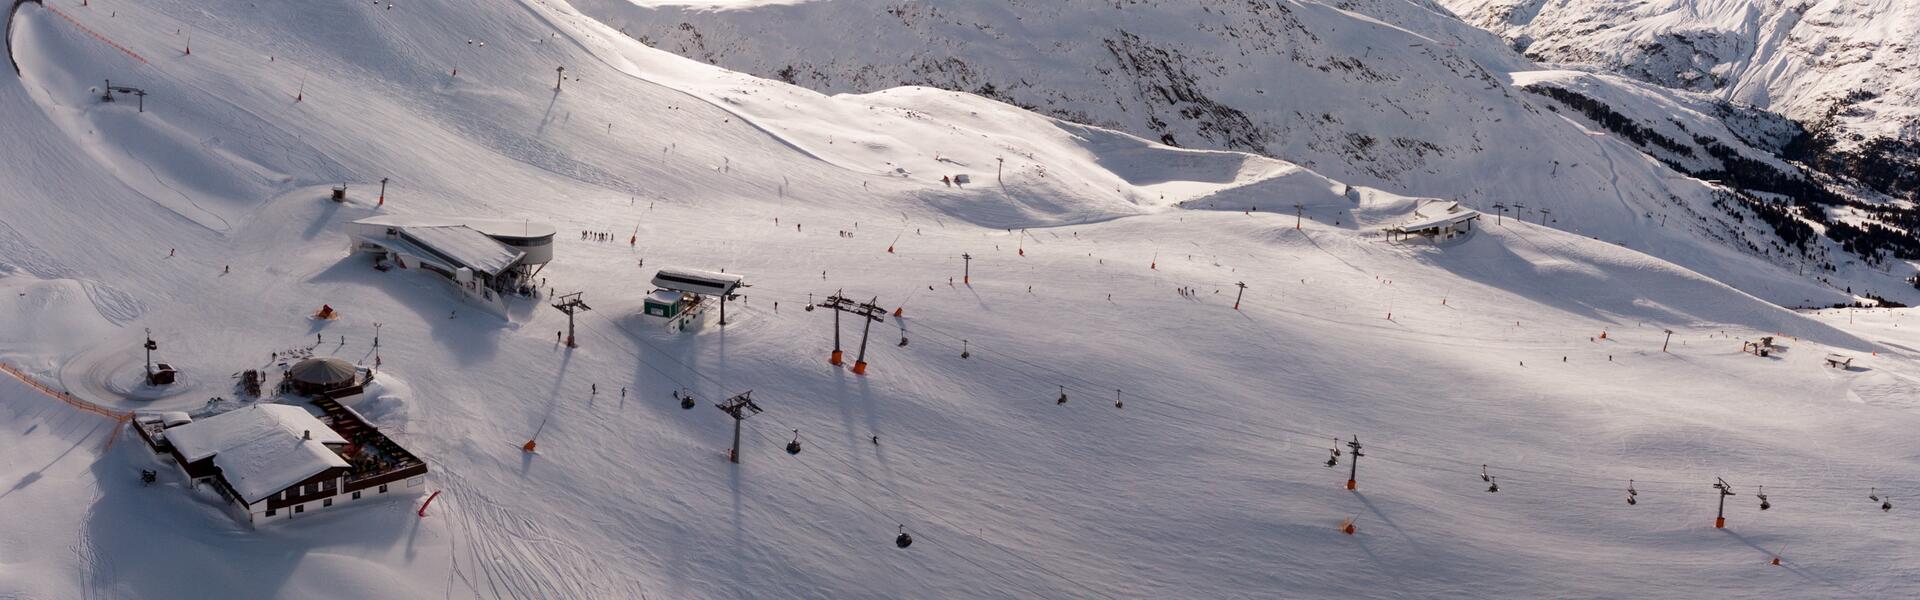 Skigebiet Obergurgl Auszeichnungen | © Scheiber Sport